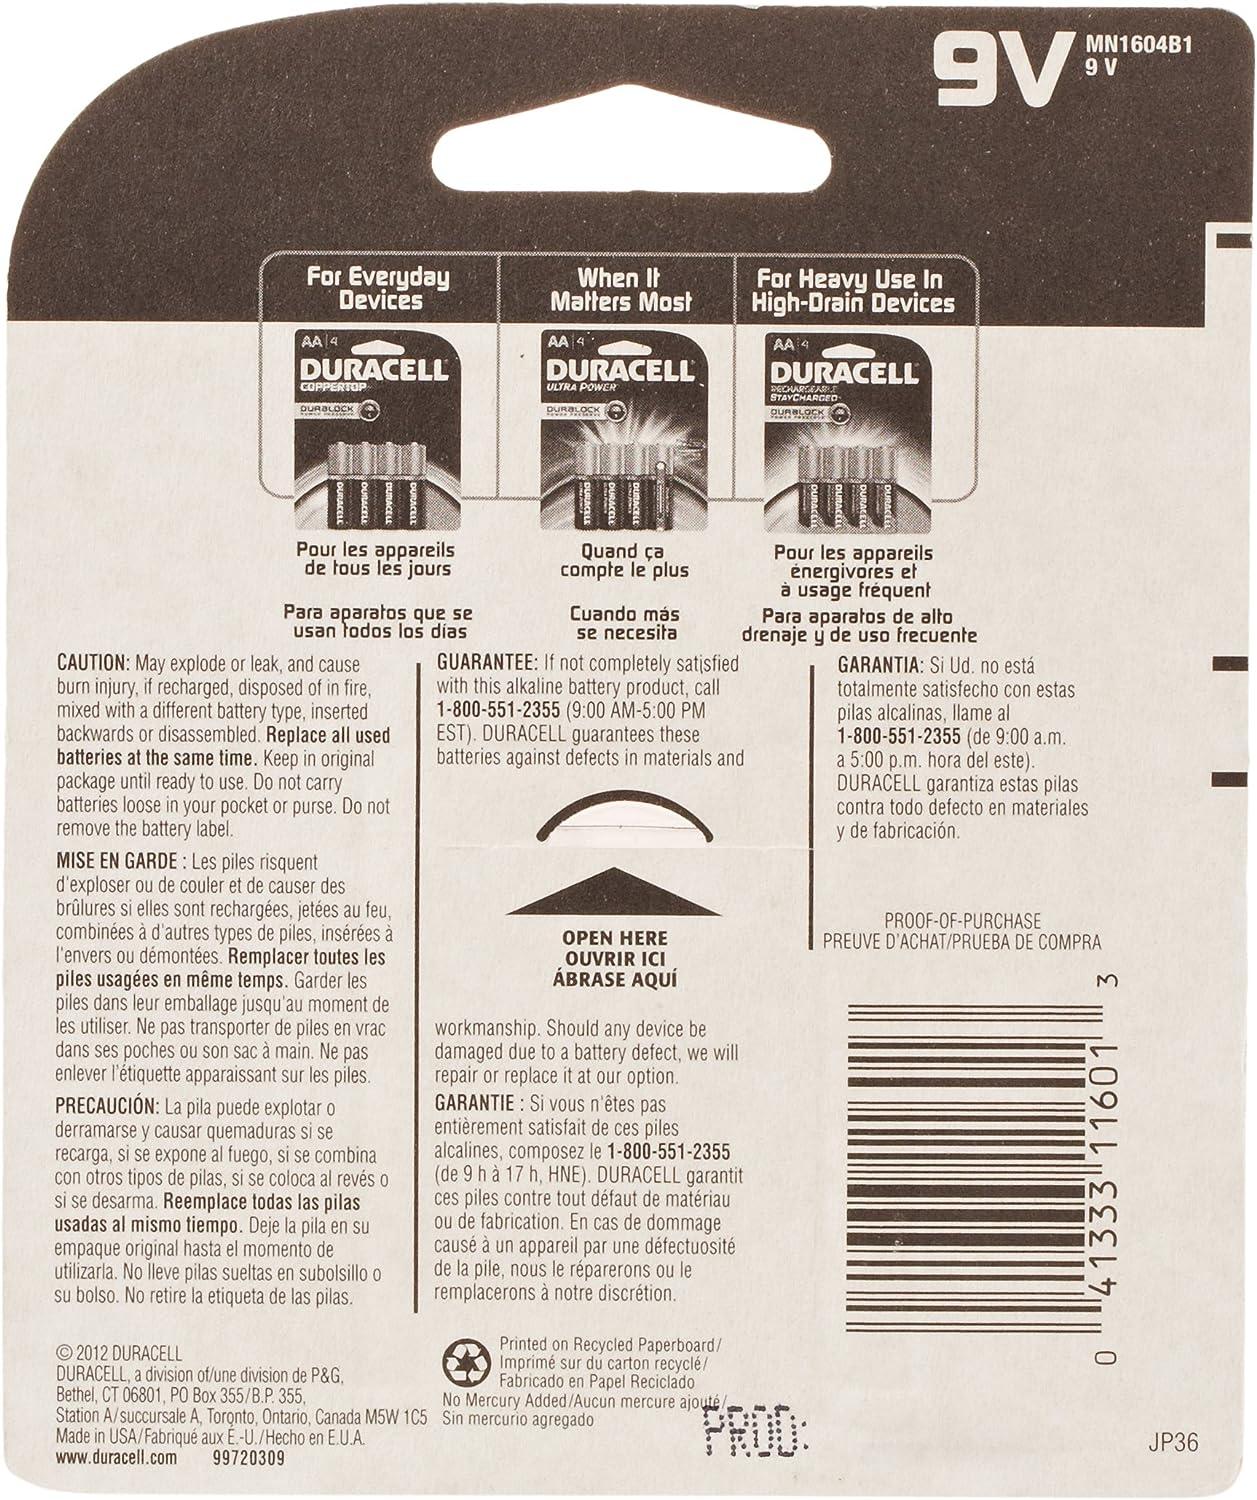 Duracell Alkaline 9V Batteries, pack of 1